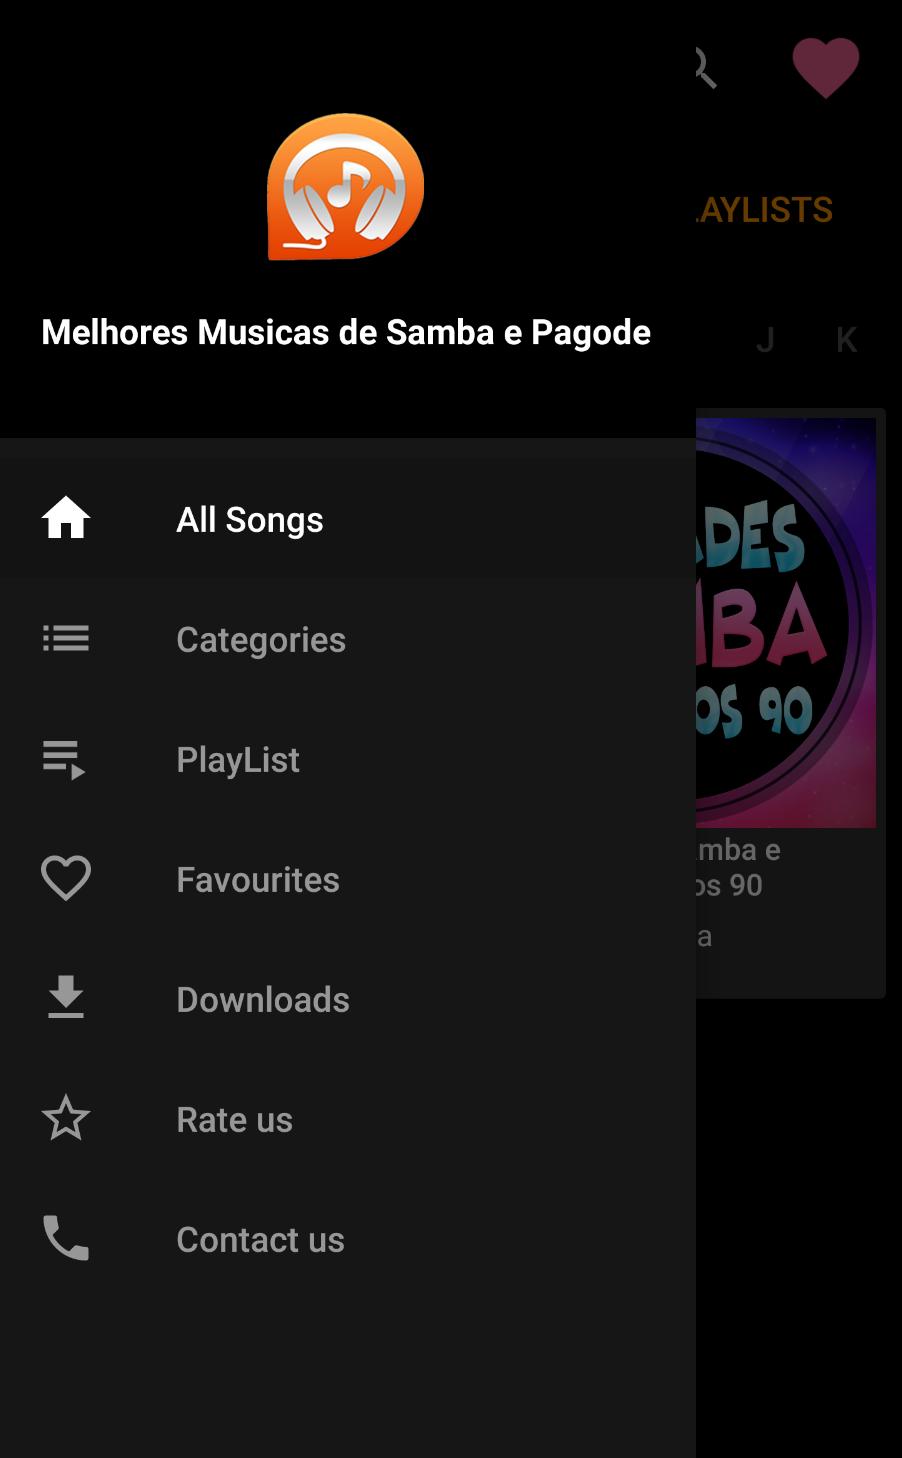 Melhores Musicas Pagode E Samba for Android - APK Download